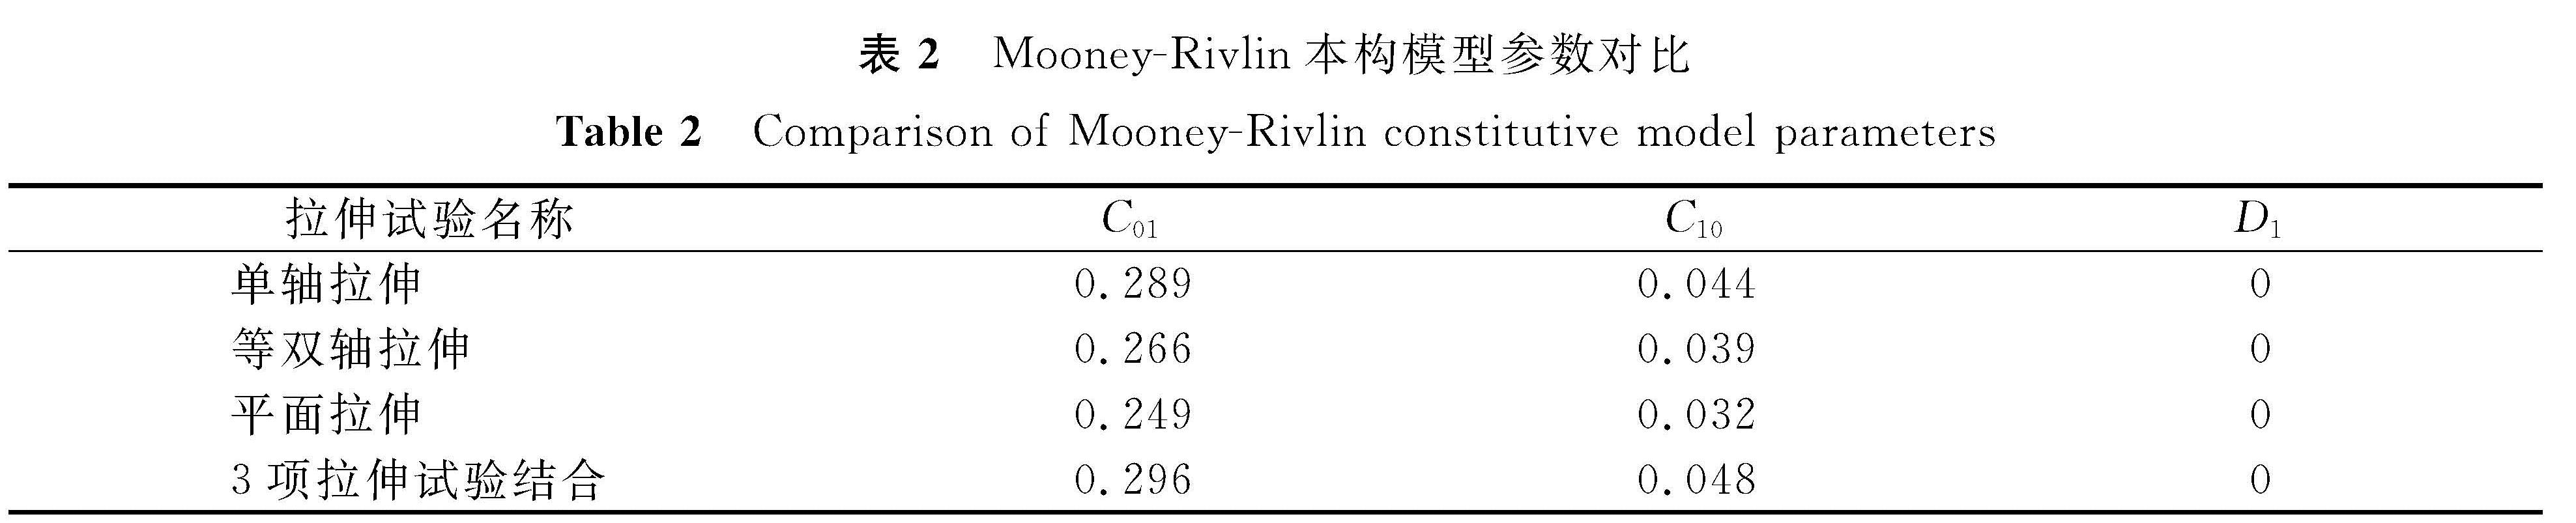 表2 Mooney-Rivlin本构模型参数对比<br/>Table 2 Comparison of Mooney-Rivlin constitutive model parameters